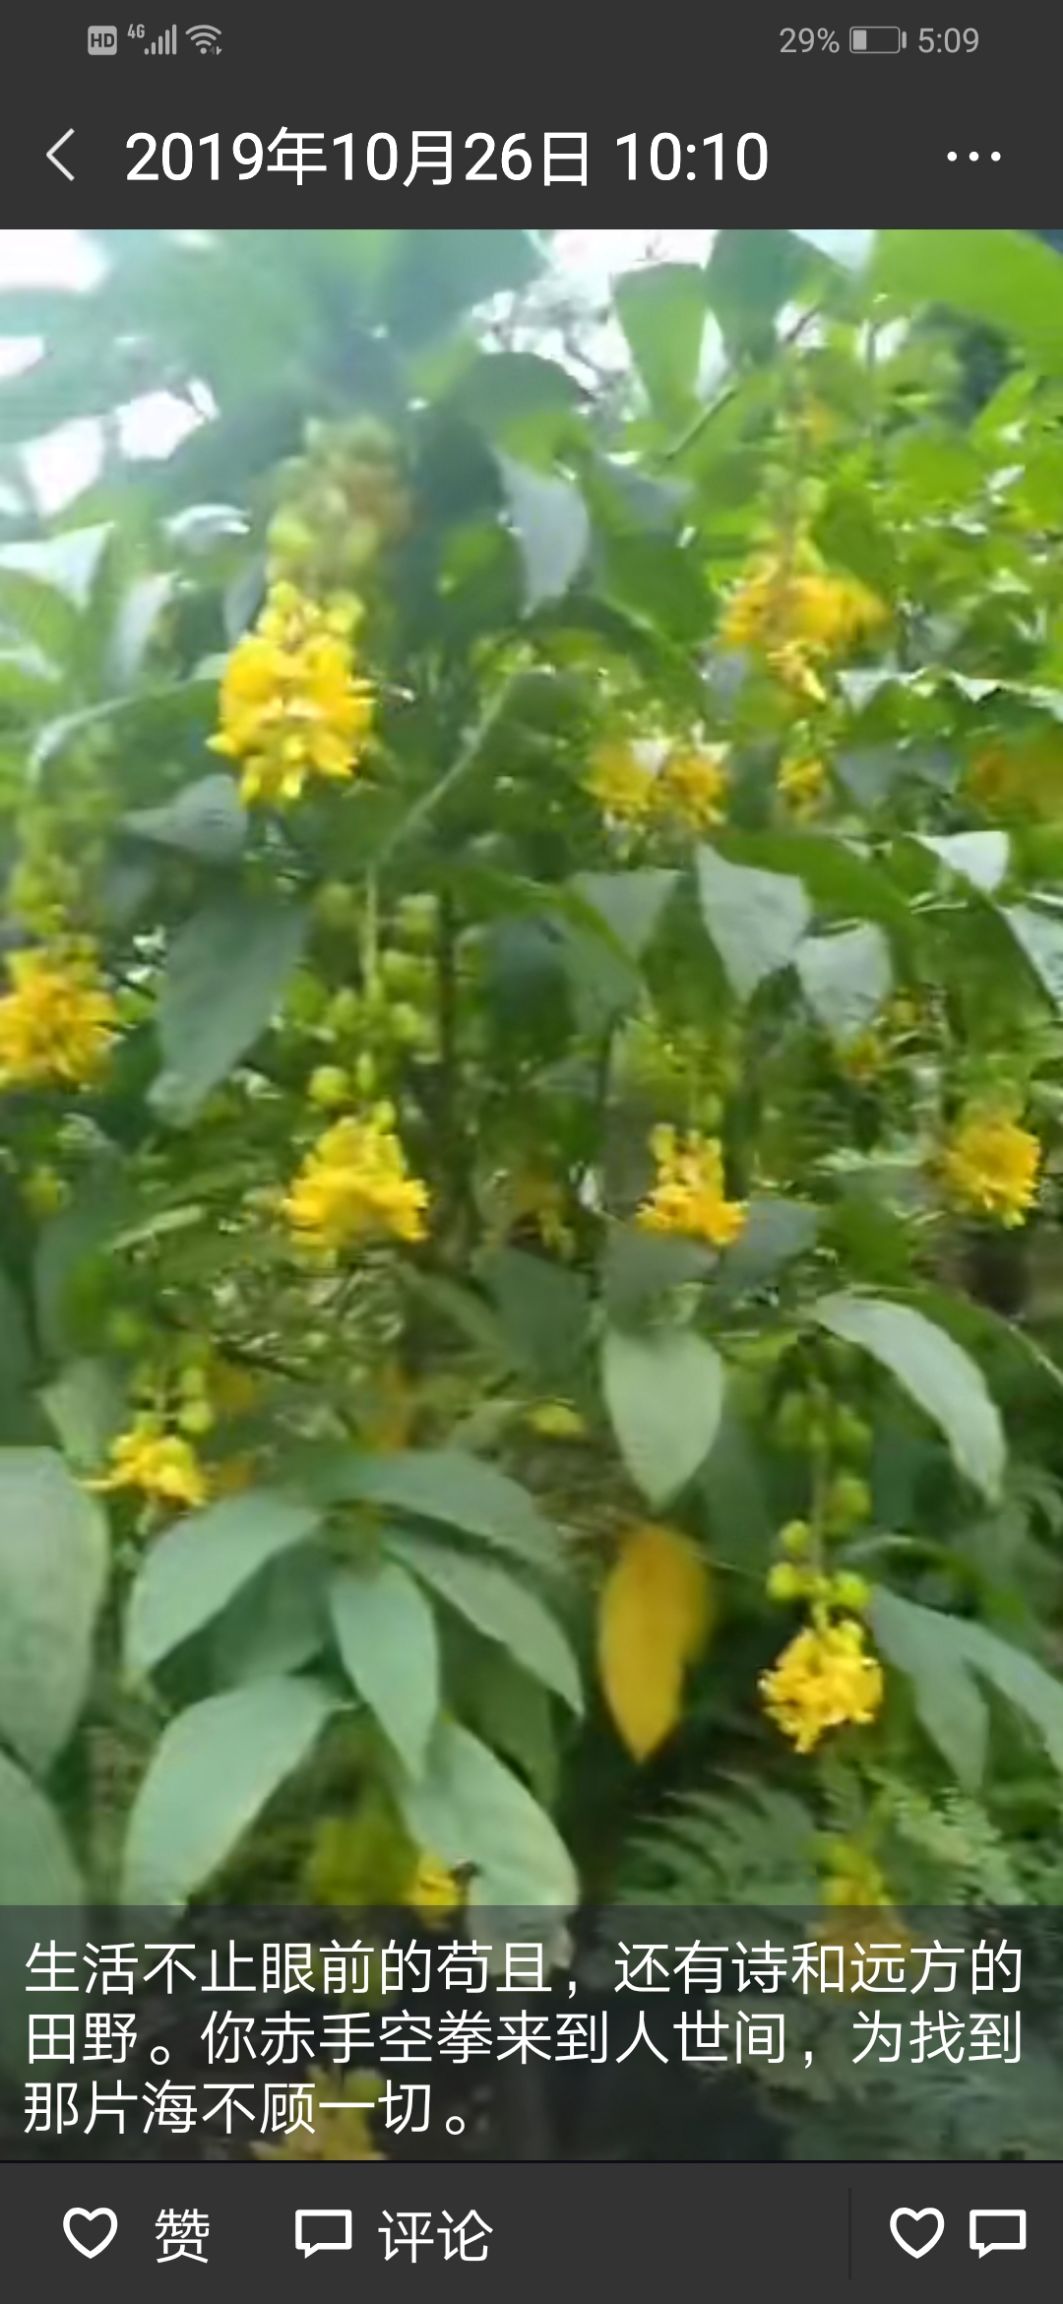 黄花倒水莲种植,可享受国家林下种植补助.欢迎你可以考虑种植.